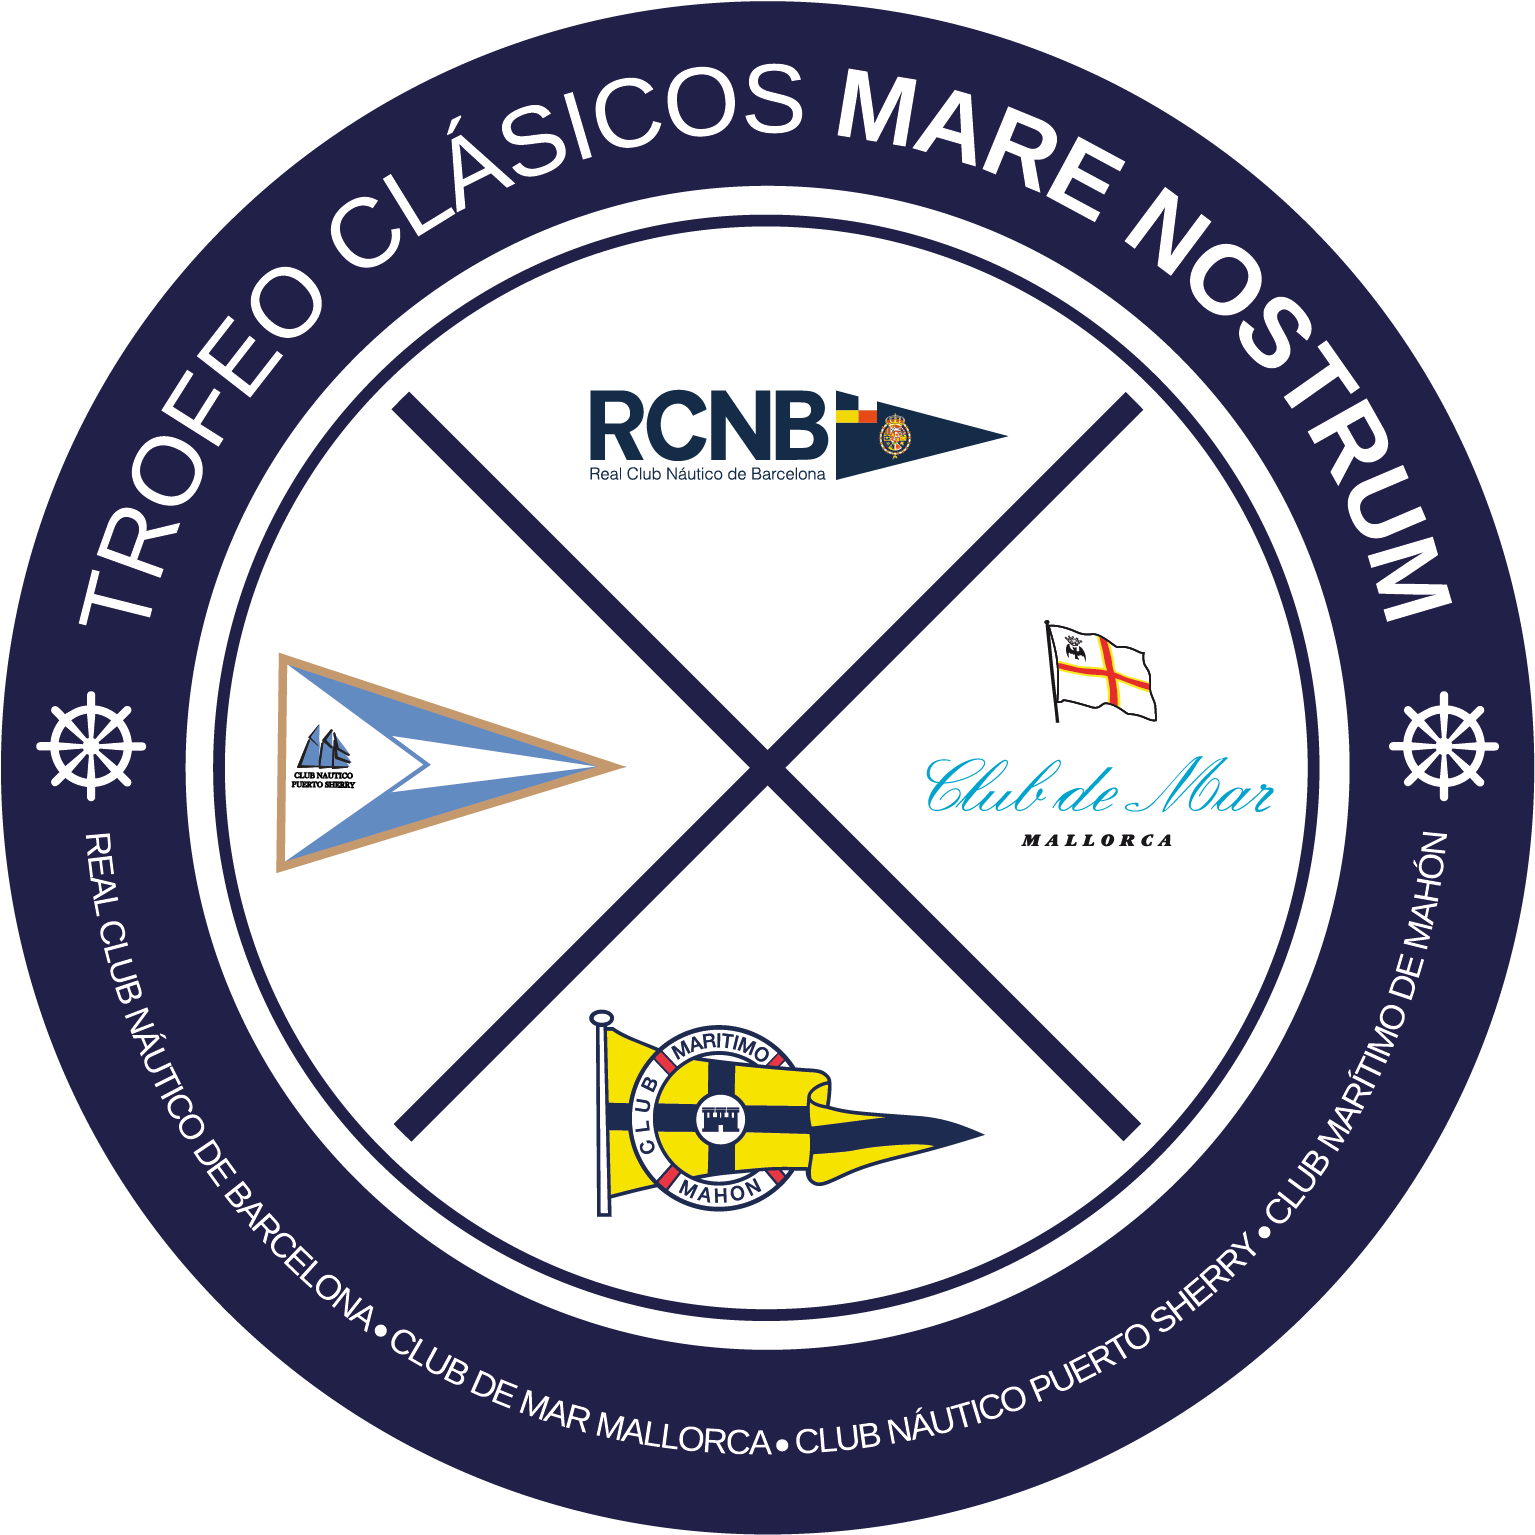 Club De Mar-mallorca Trofeo Clásicos Mare Nostrum - Circle Clipart (1535x1535), Png Download